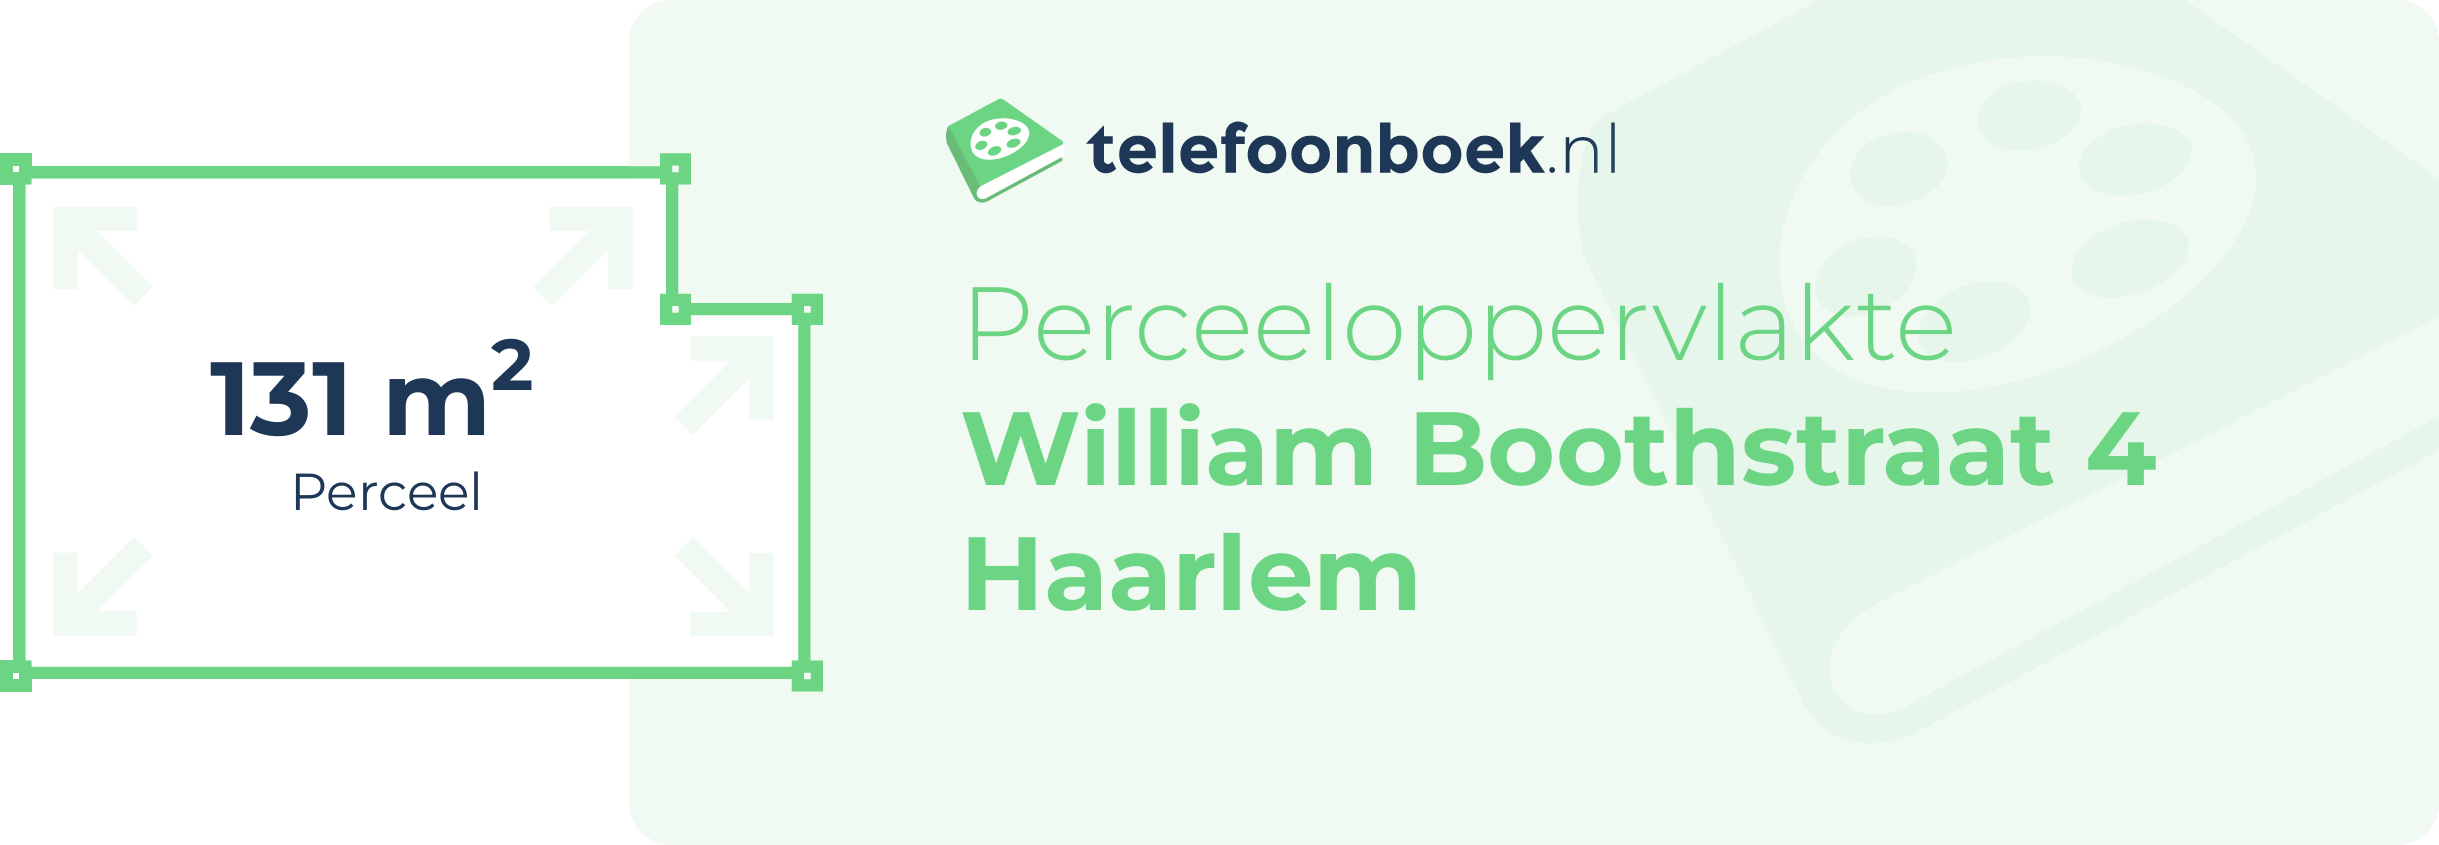 Perceeloppervlakte William Boothstraat 4 Haarlem